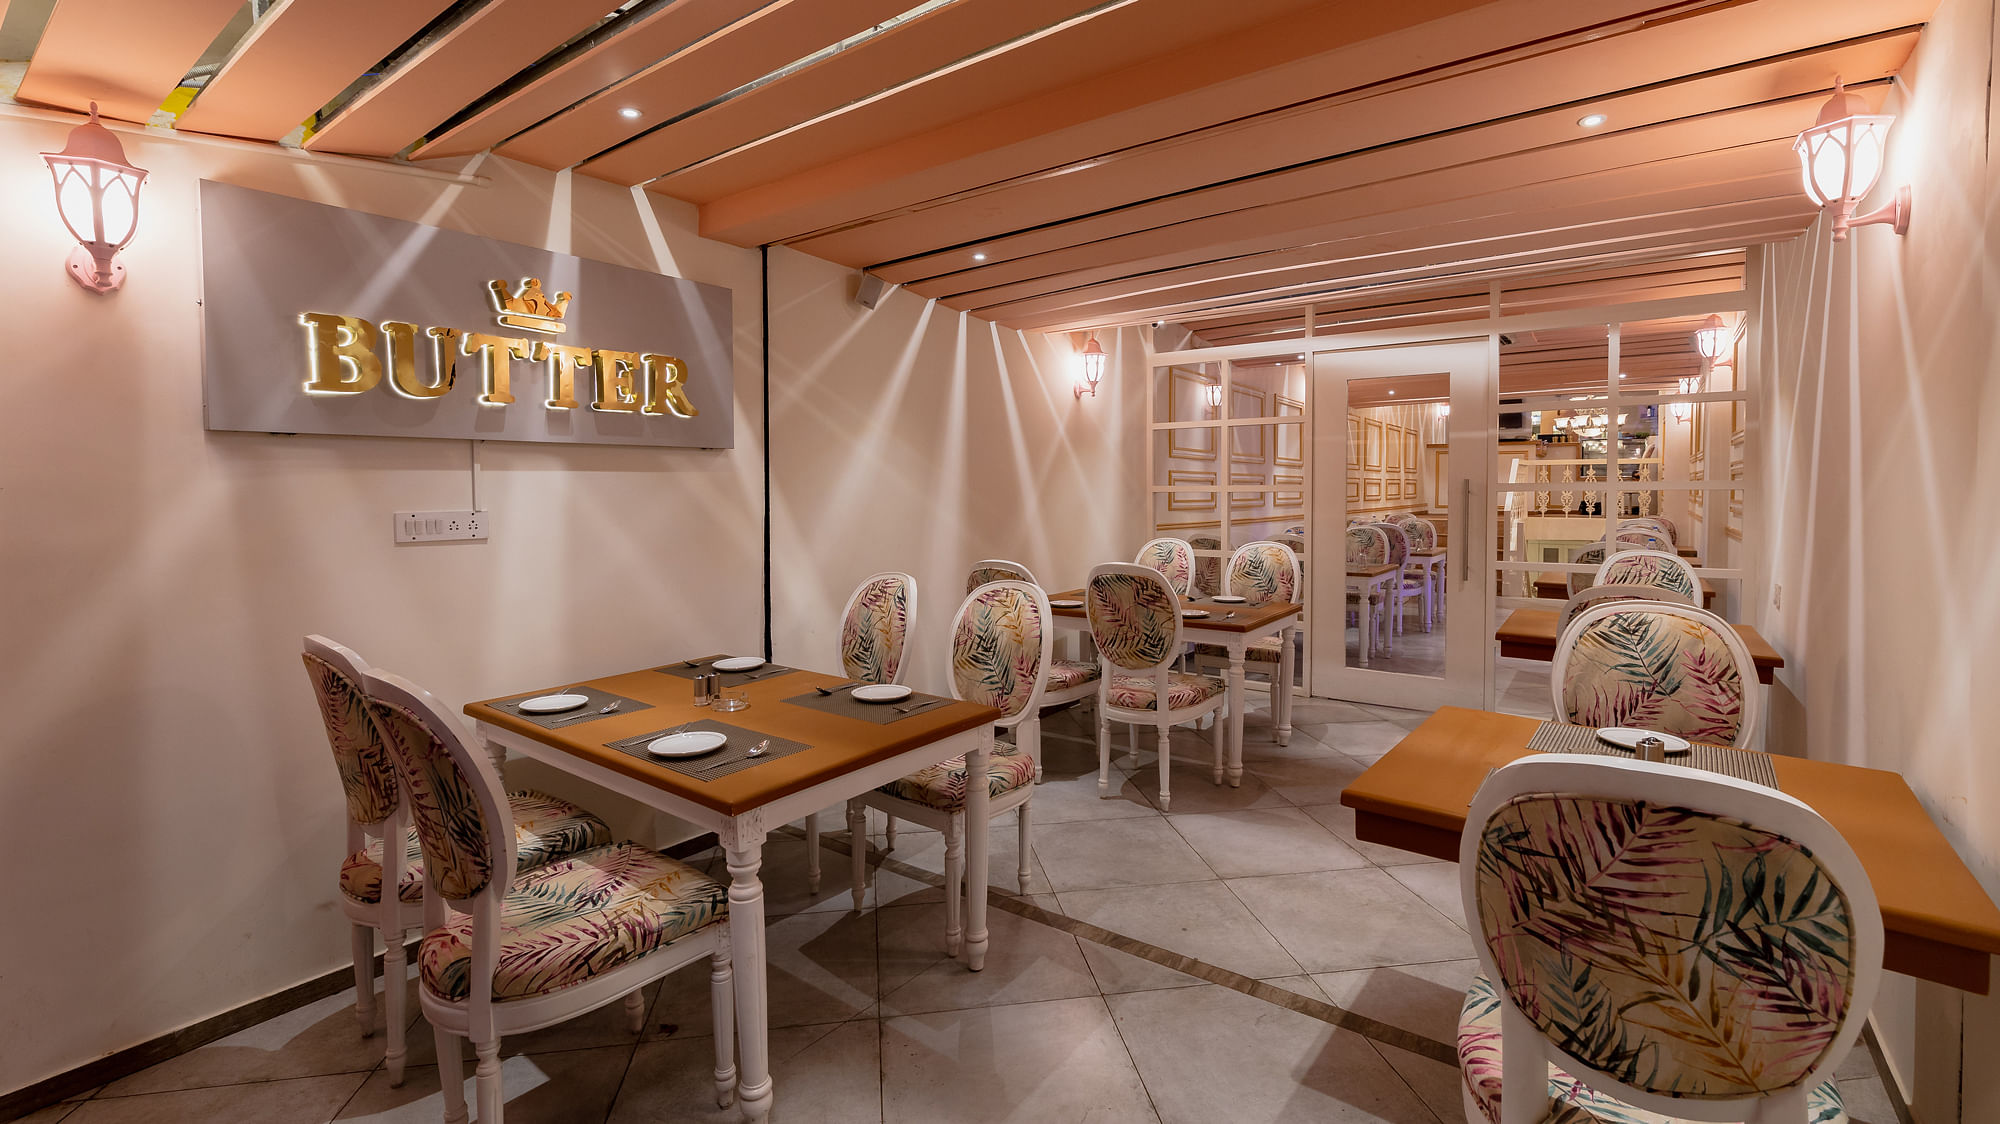 Butter Artisan Cafe in Ashok Nagar, Bangalore